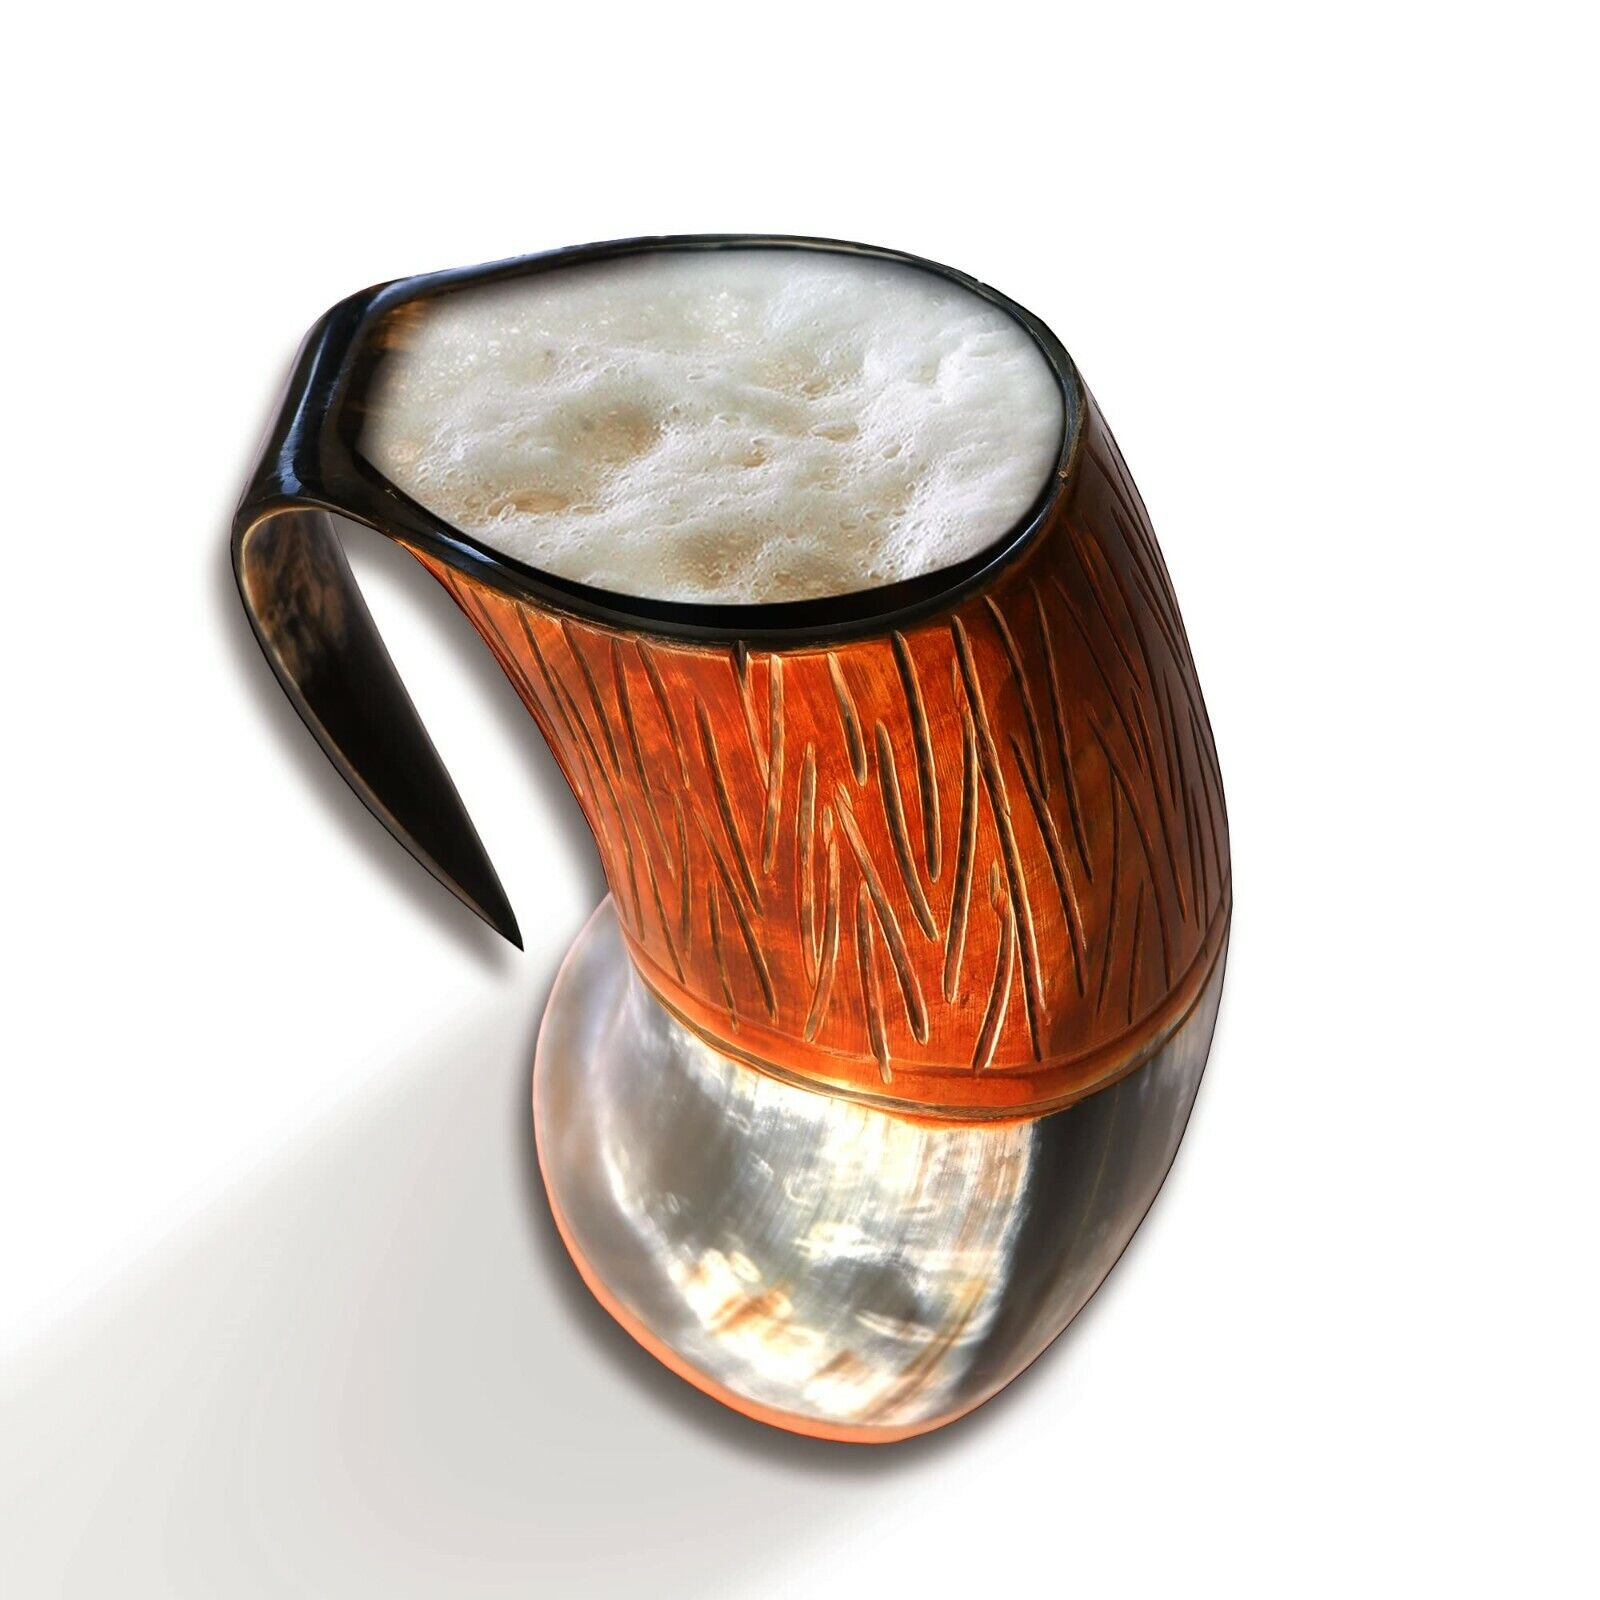 Viking Drinking Medieval Ox Horn Mug For Mead Wine Drinkware Coffee Tea Beer Cup